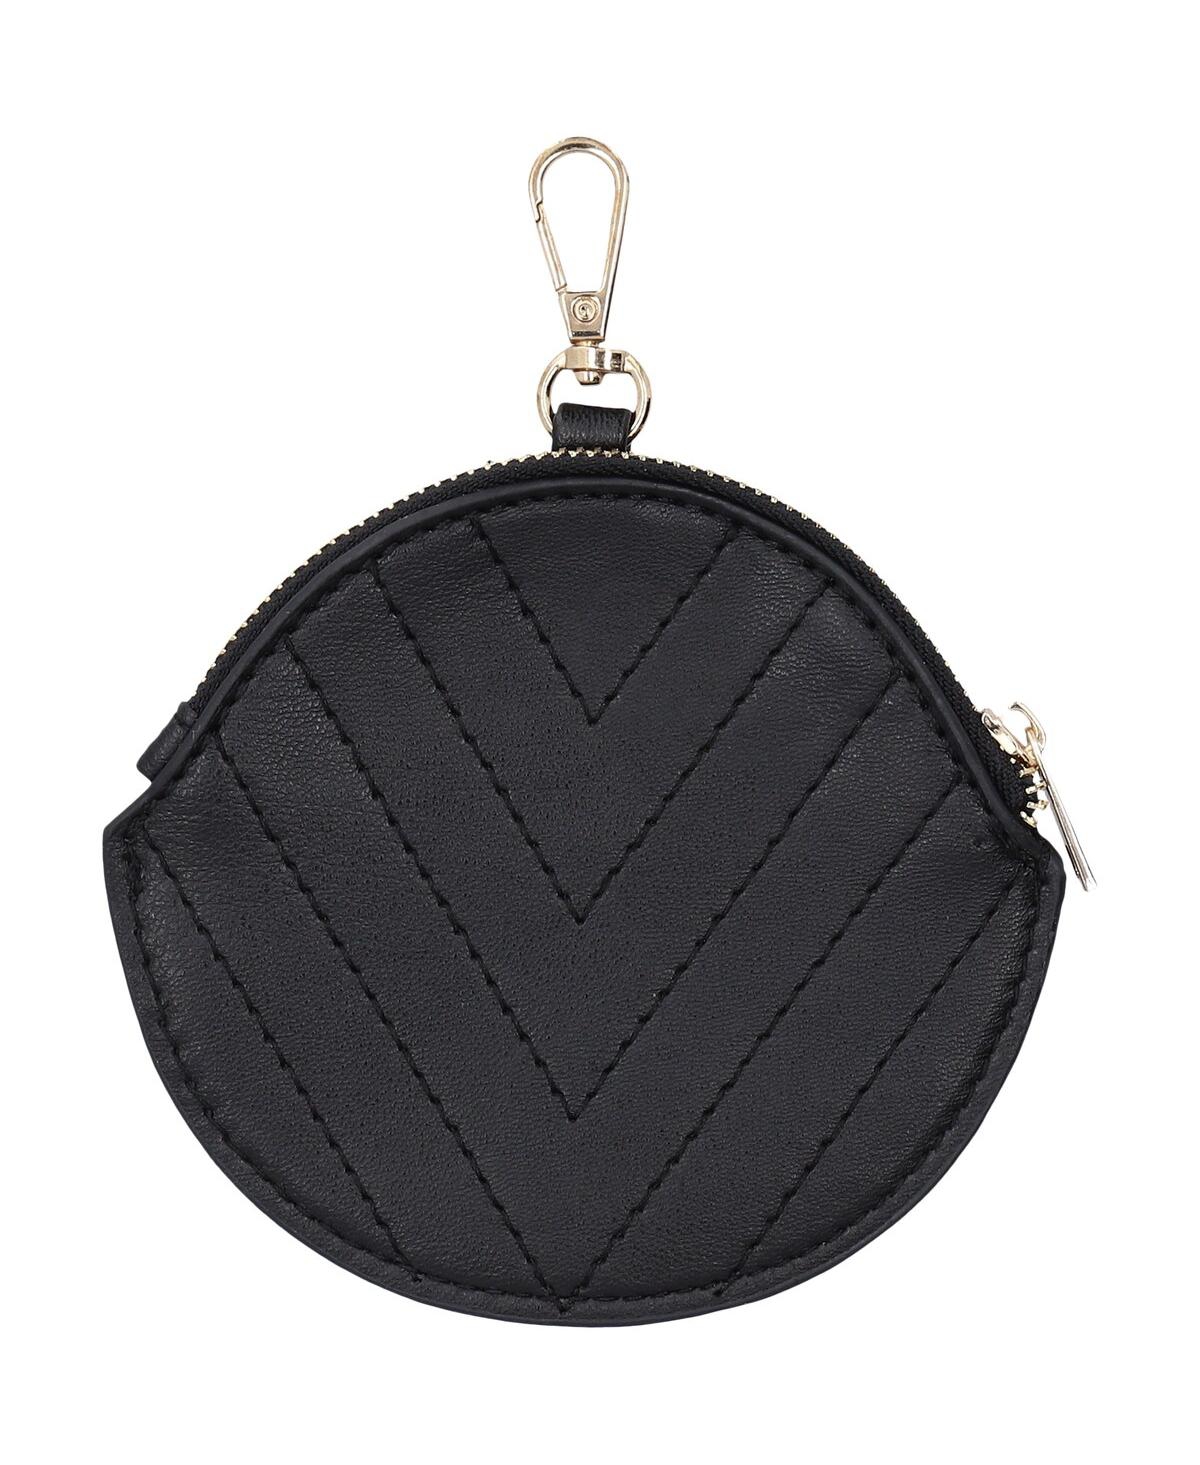 Shop Cuce Women's  Seattle Kraken Leather Strap Bag In Black